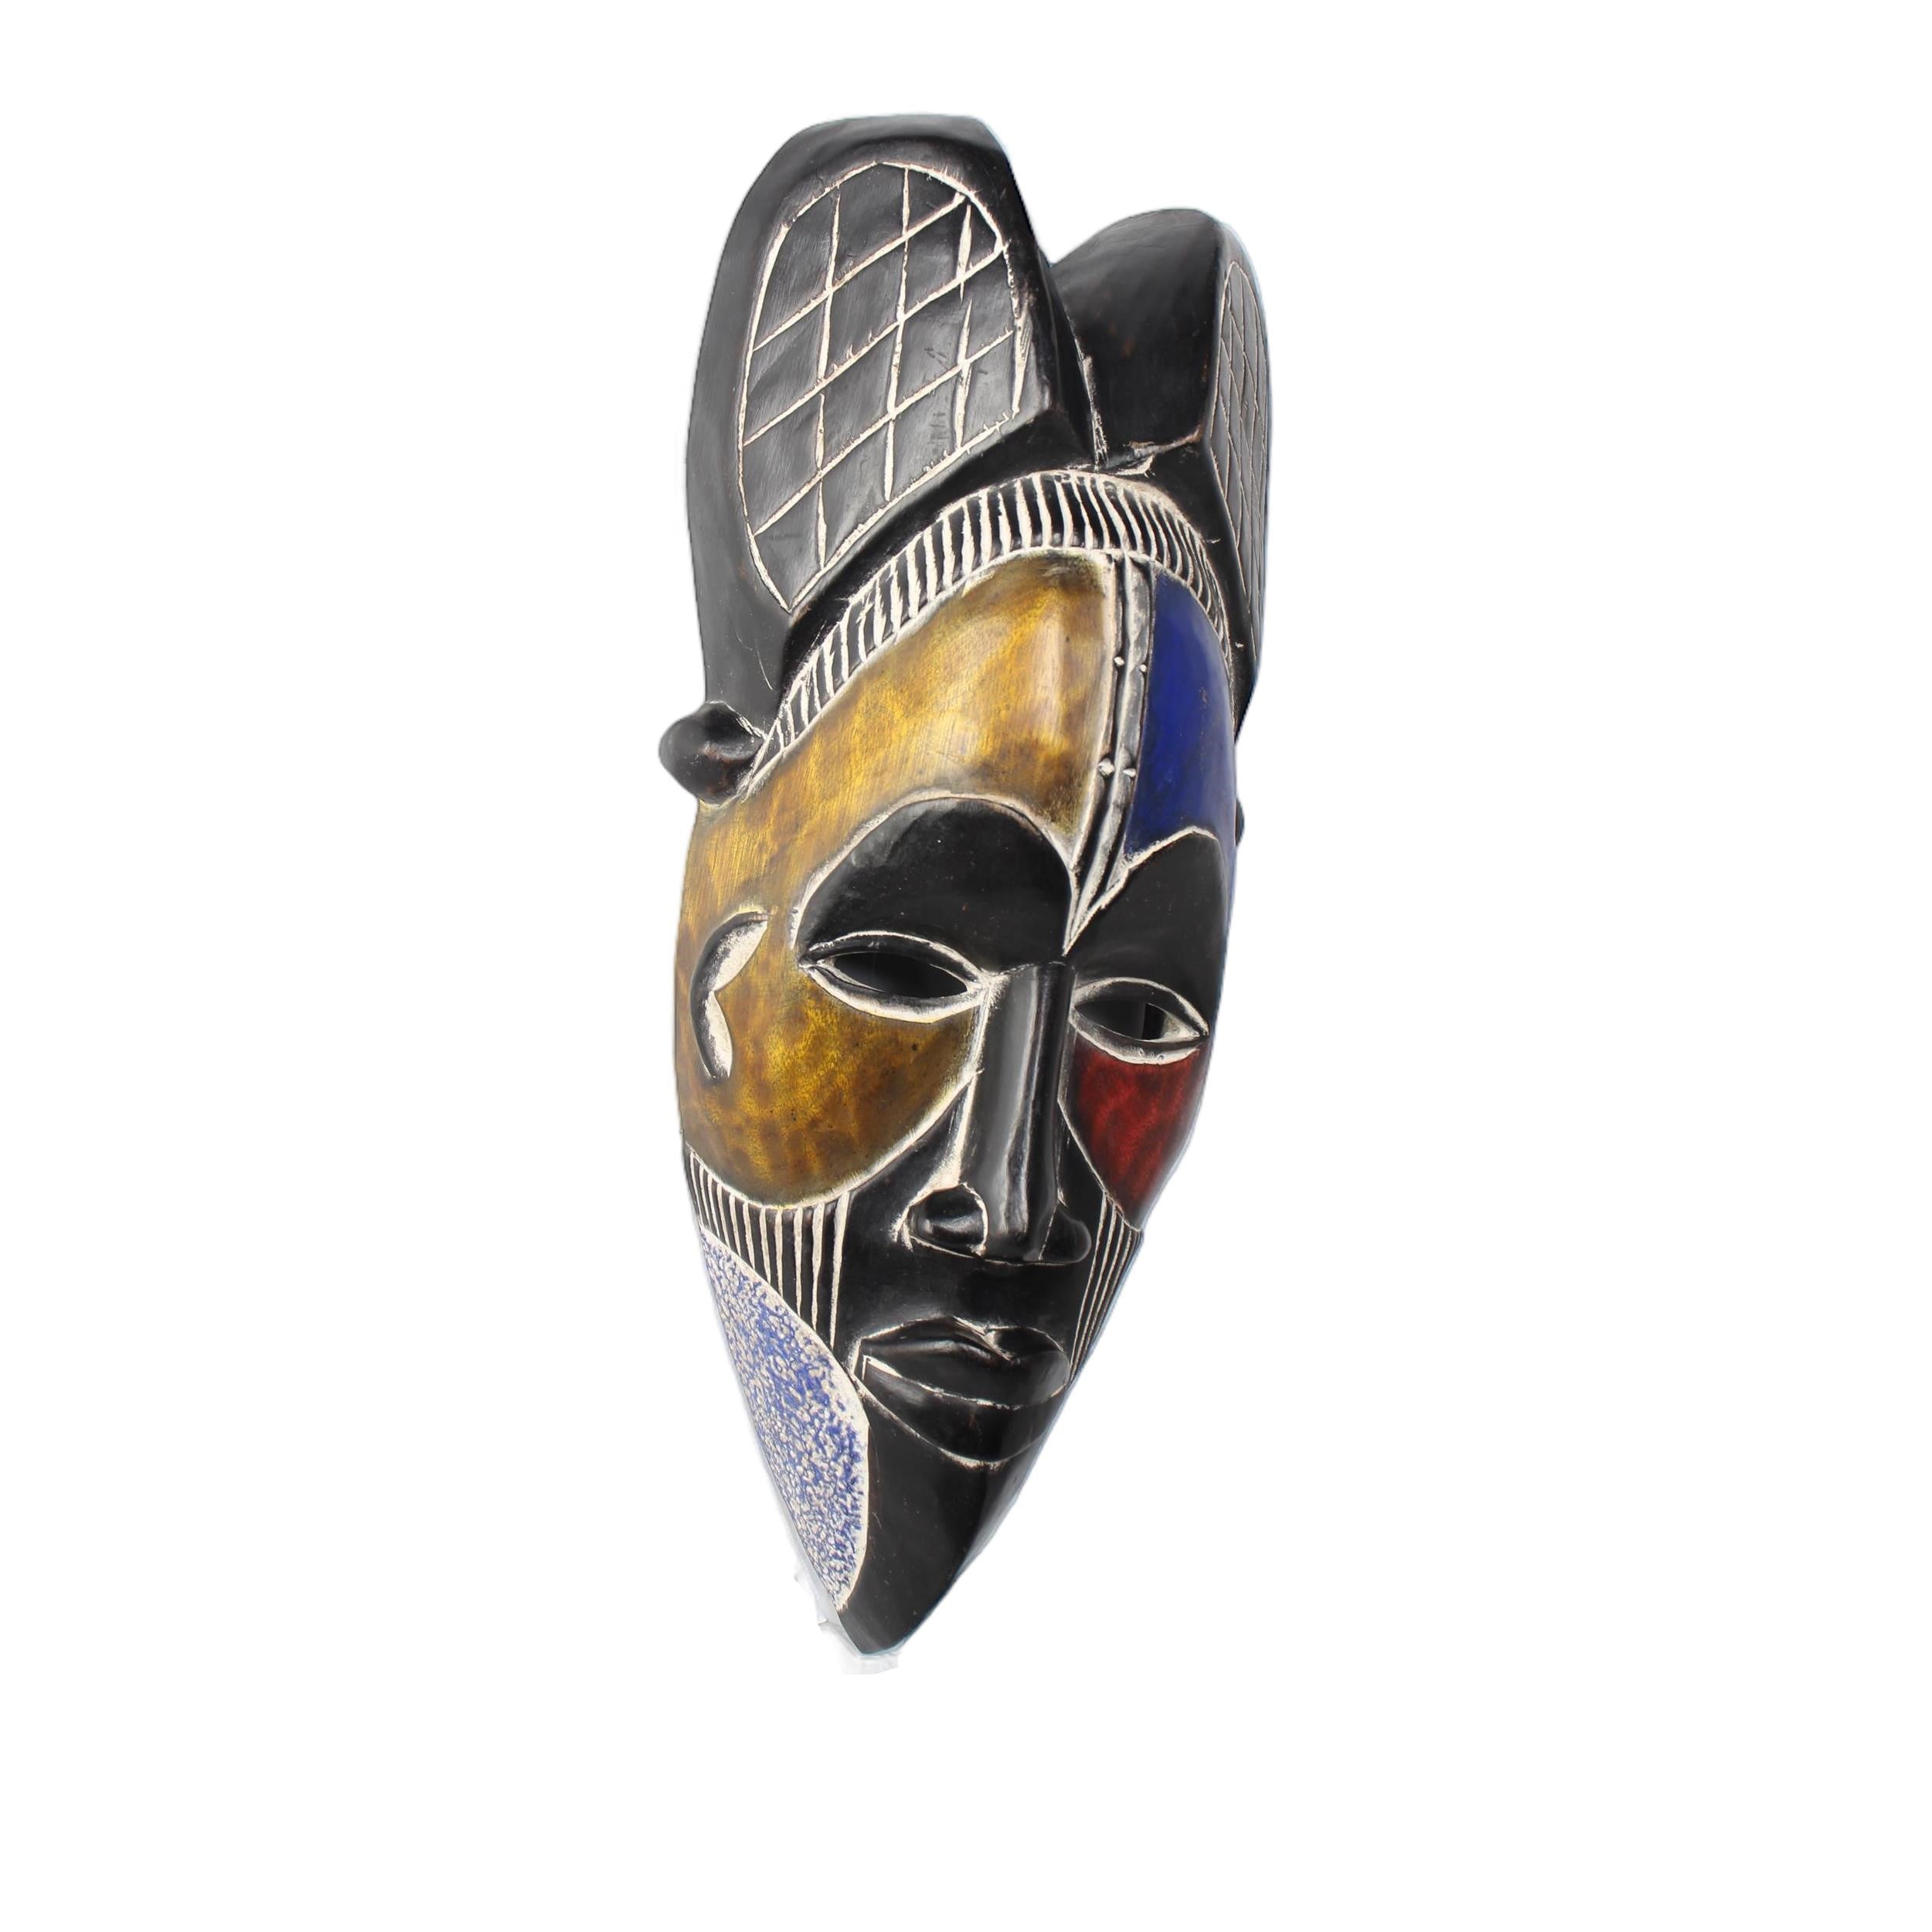 Tikar Tribe Mask ~18.1" Tall - Mask